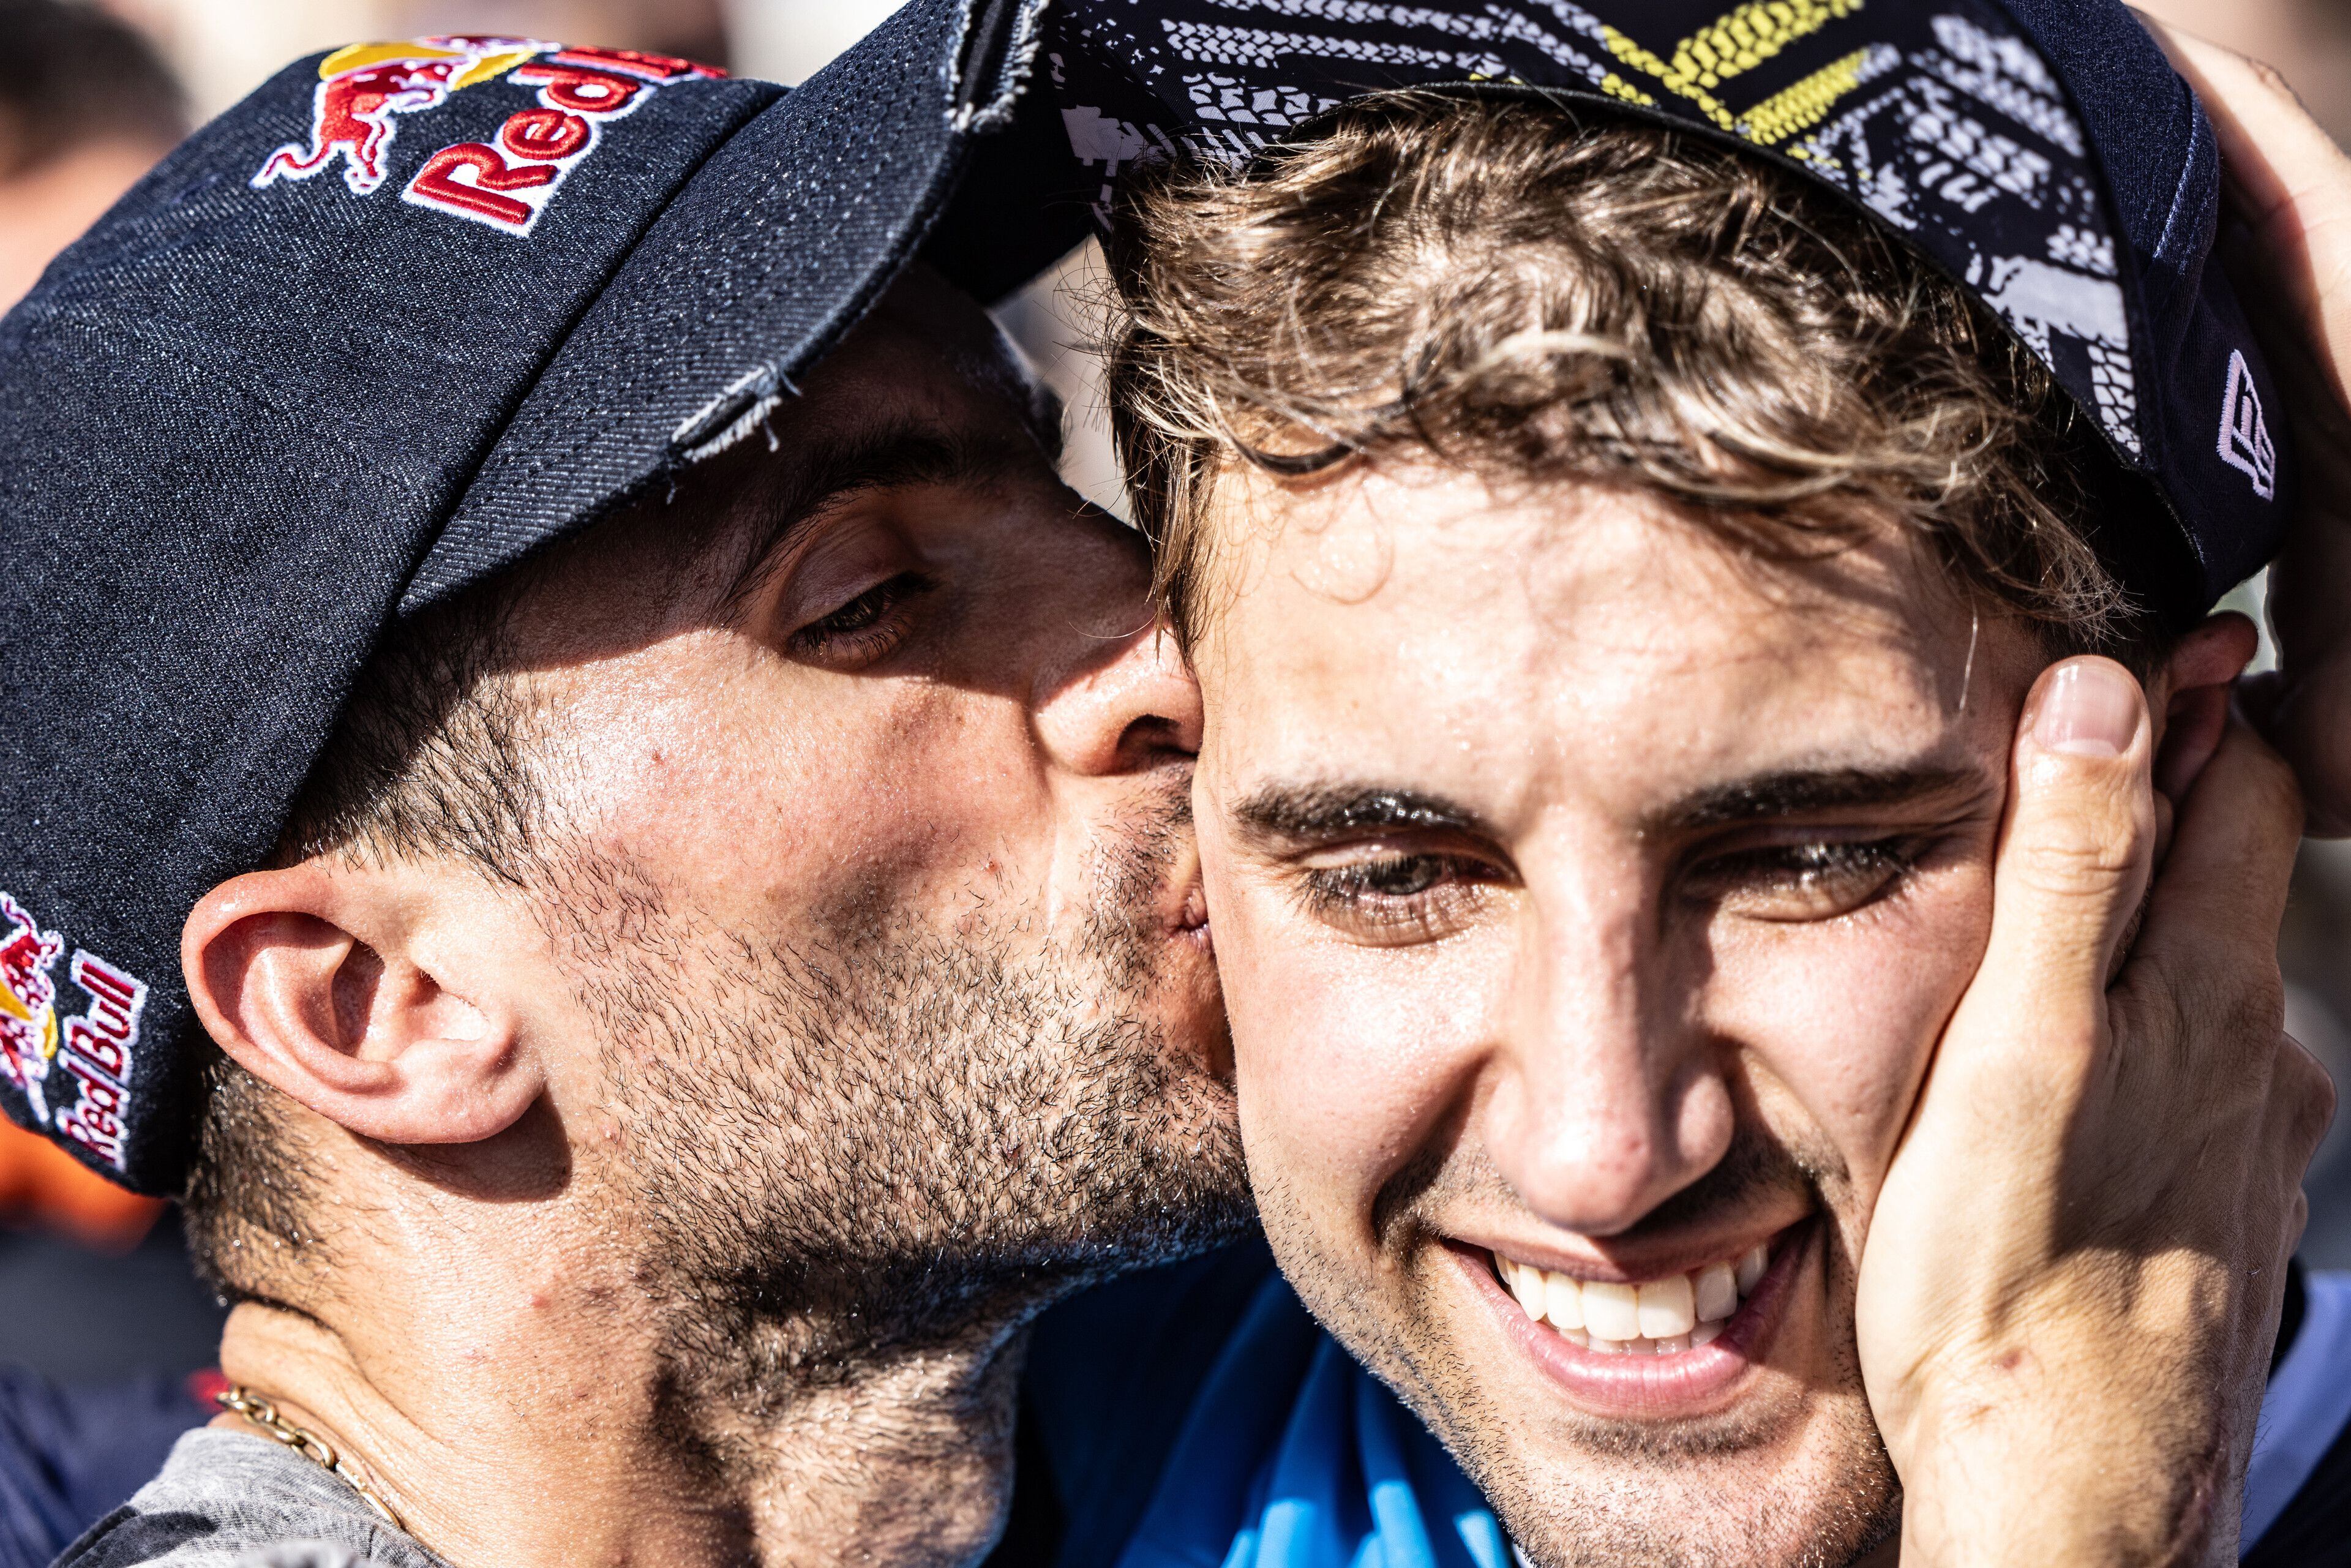 Kevin y su hermano Luciano Benavides, flamante campeón mundial de Rally Raid (Kin Marcin / Red Bull Content Pool)